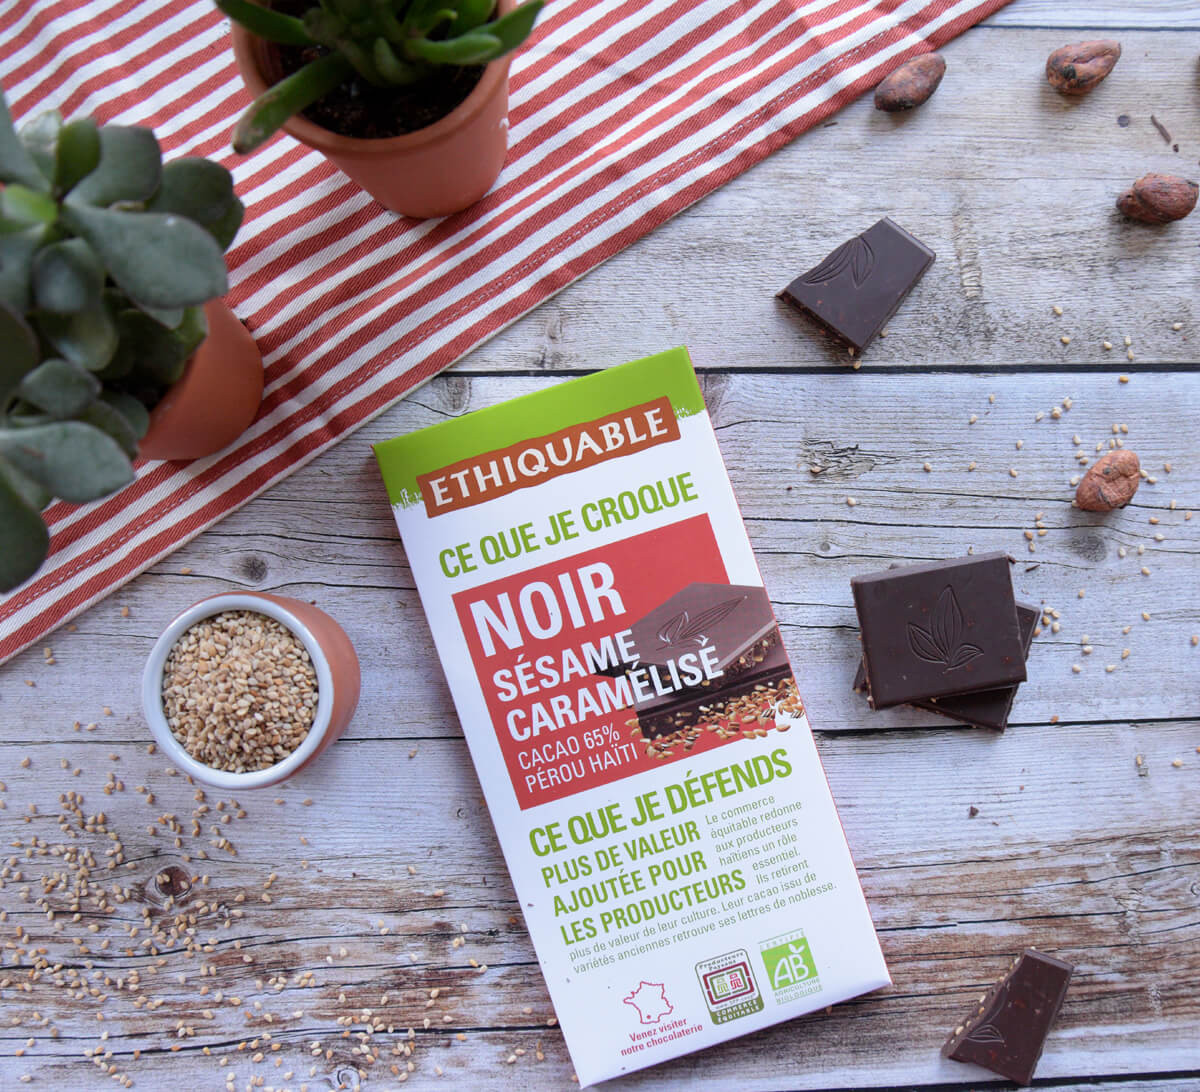 Ethiquable - Chocolat noir bio sésame caramélisé 65% cacao issu du Commerce Equitable